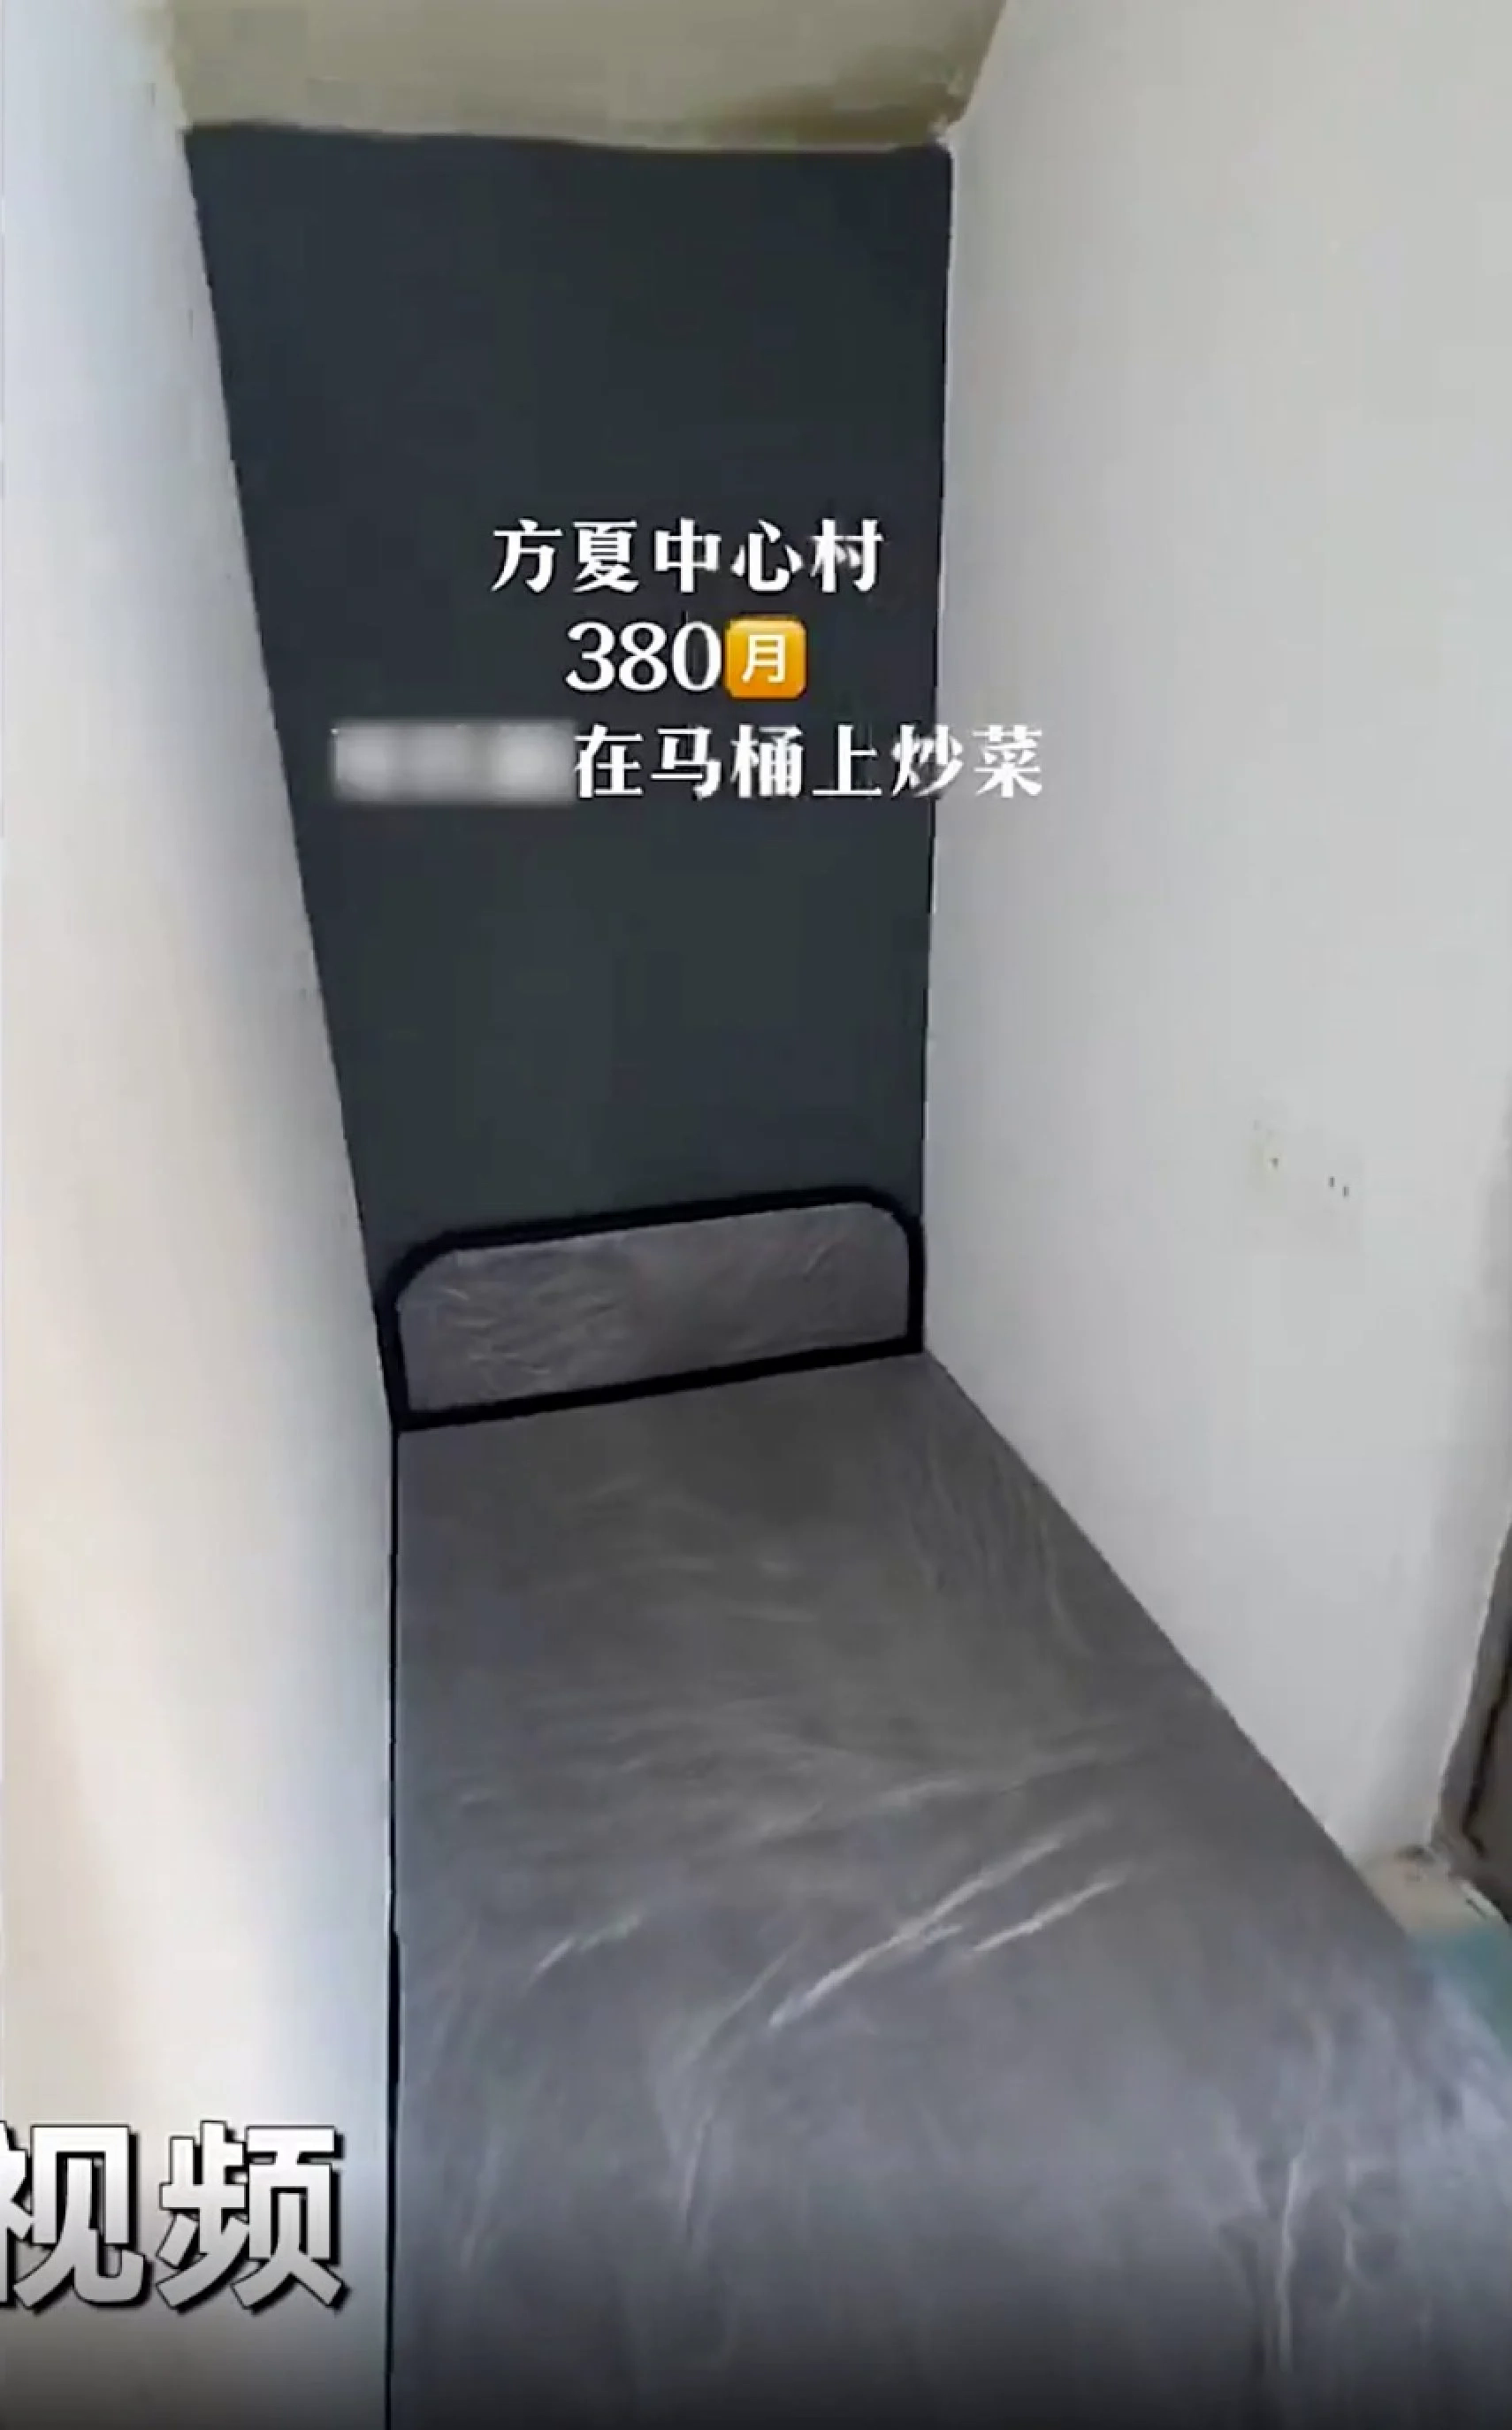 căn hộ siêu nhỏ tại Thượng Hải gây tranh cãi với lời quảng cáo bỡn cợt